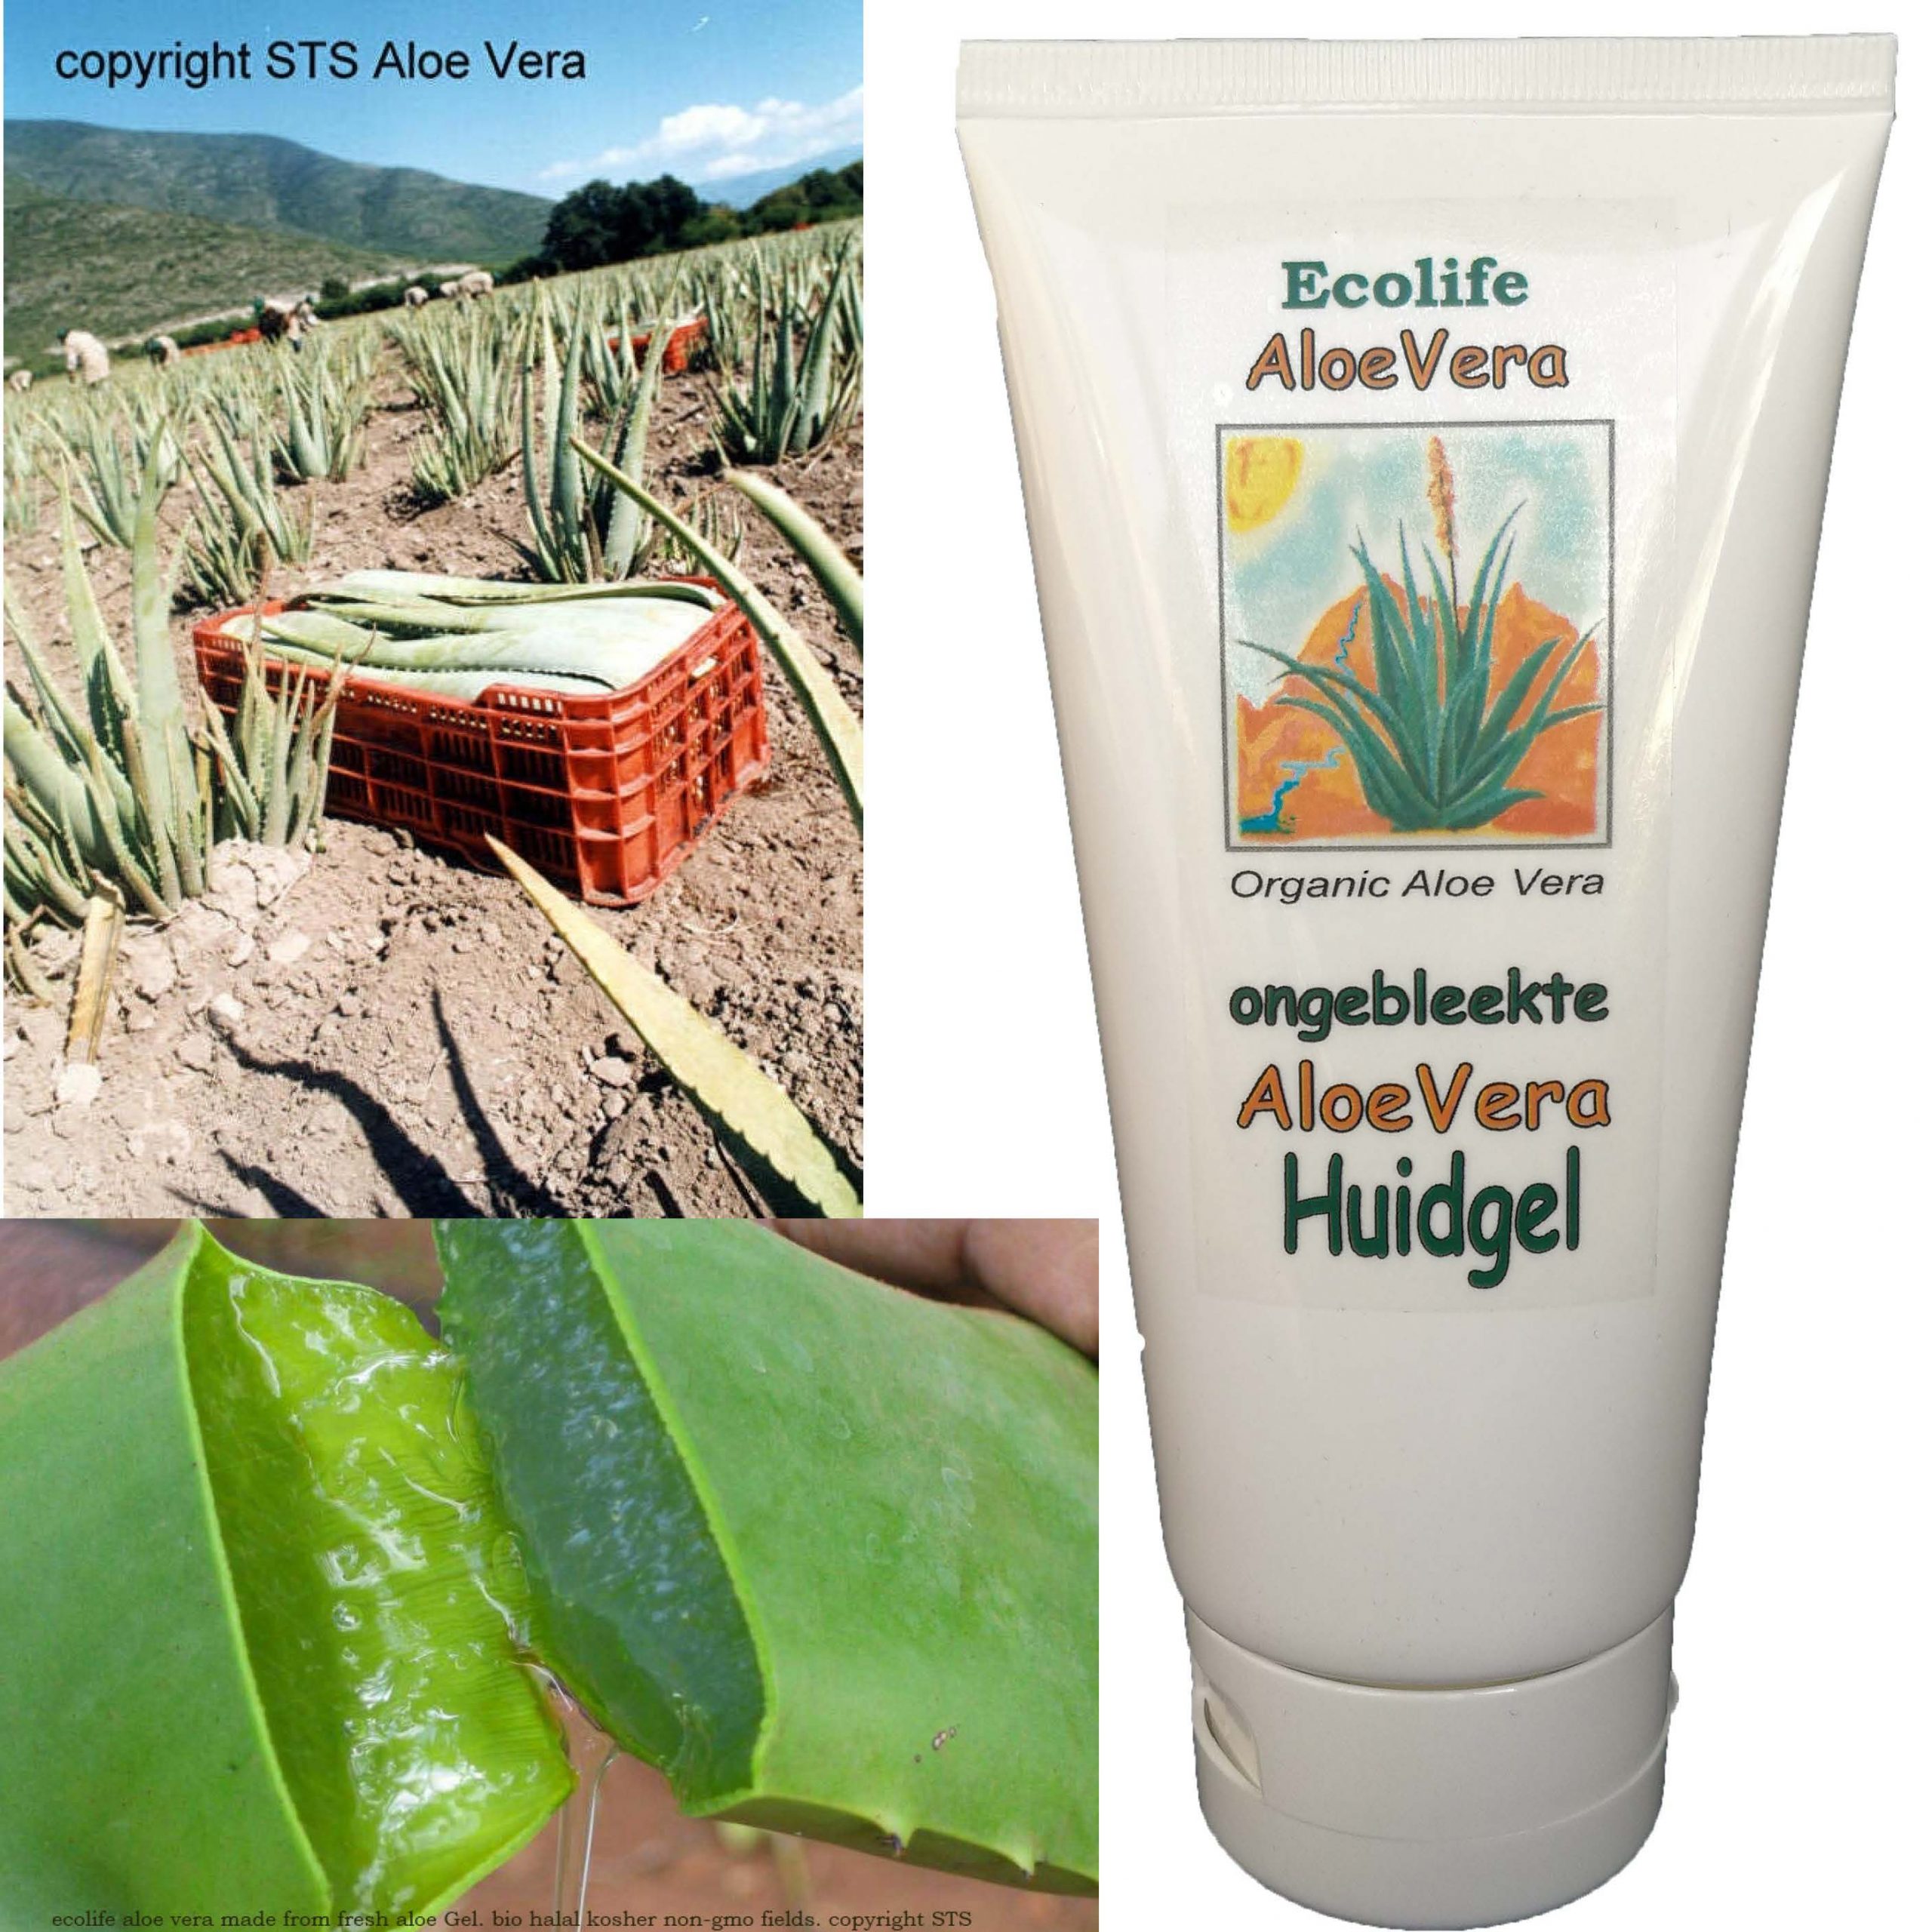 Etna sieraden bijeenkomst Huidverzorging - Aloe Vera Puur & Gezond webshop aloe kopen gel juice